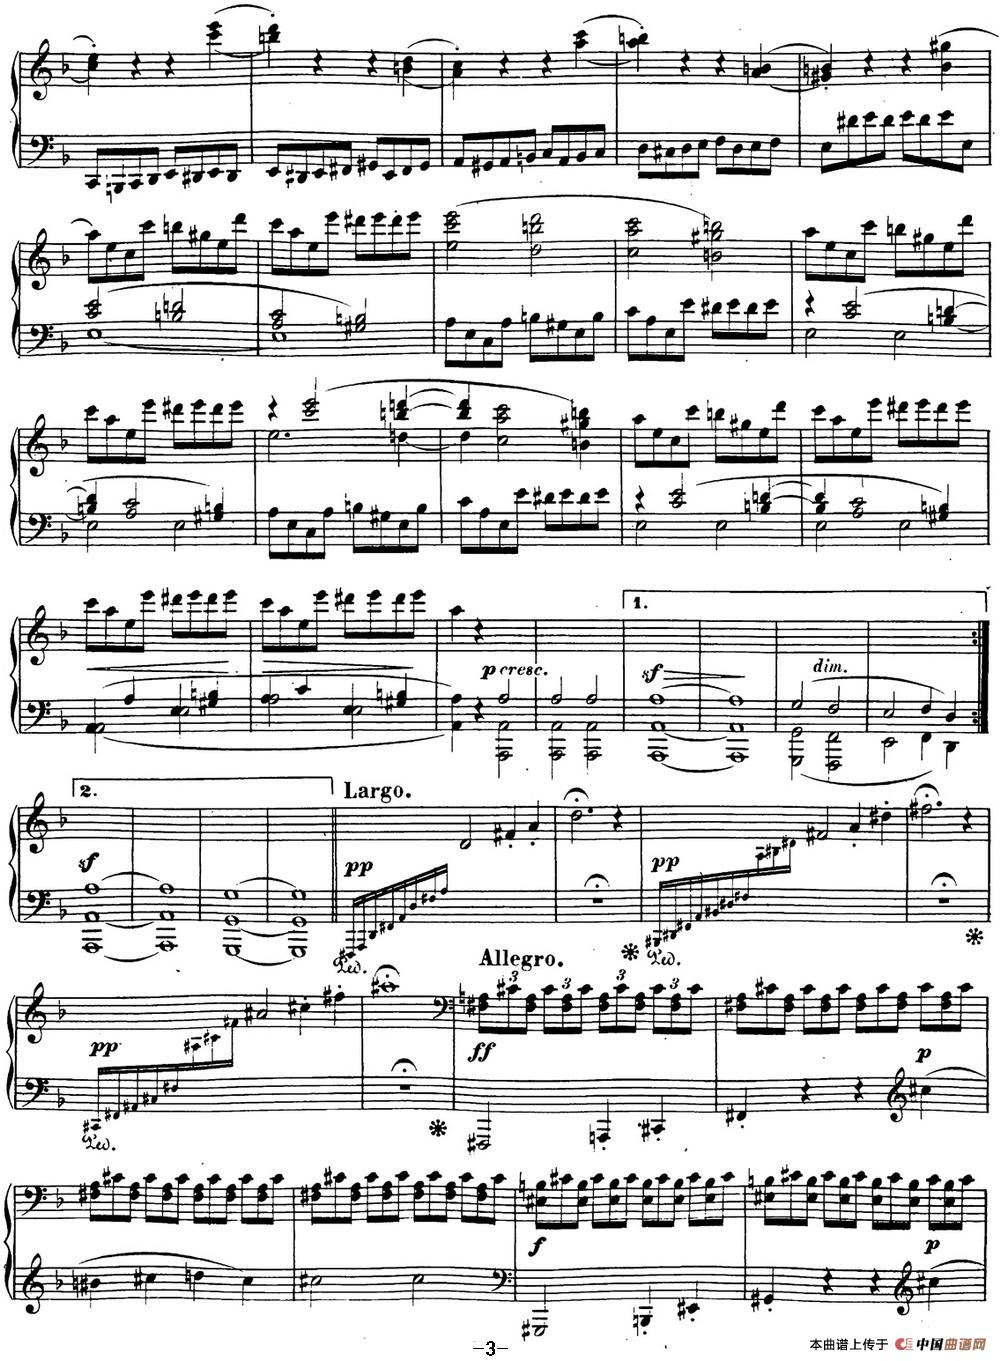 贝多芬钢琴奏鸣曲17 暴风雨 d小调 Op.31 No.2 D min